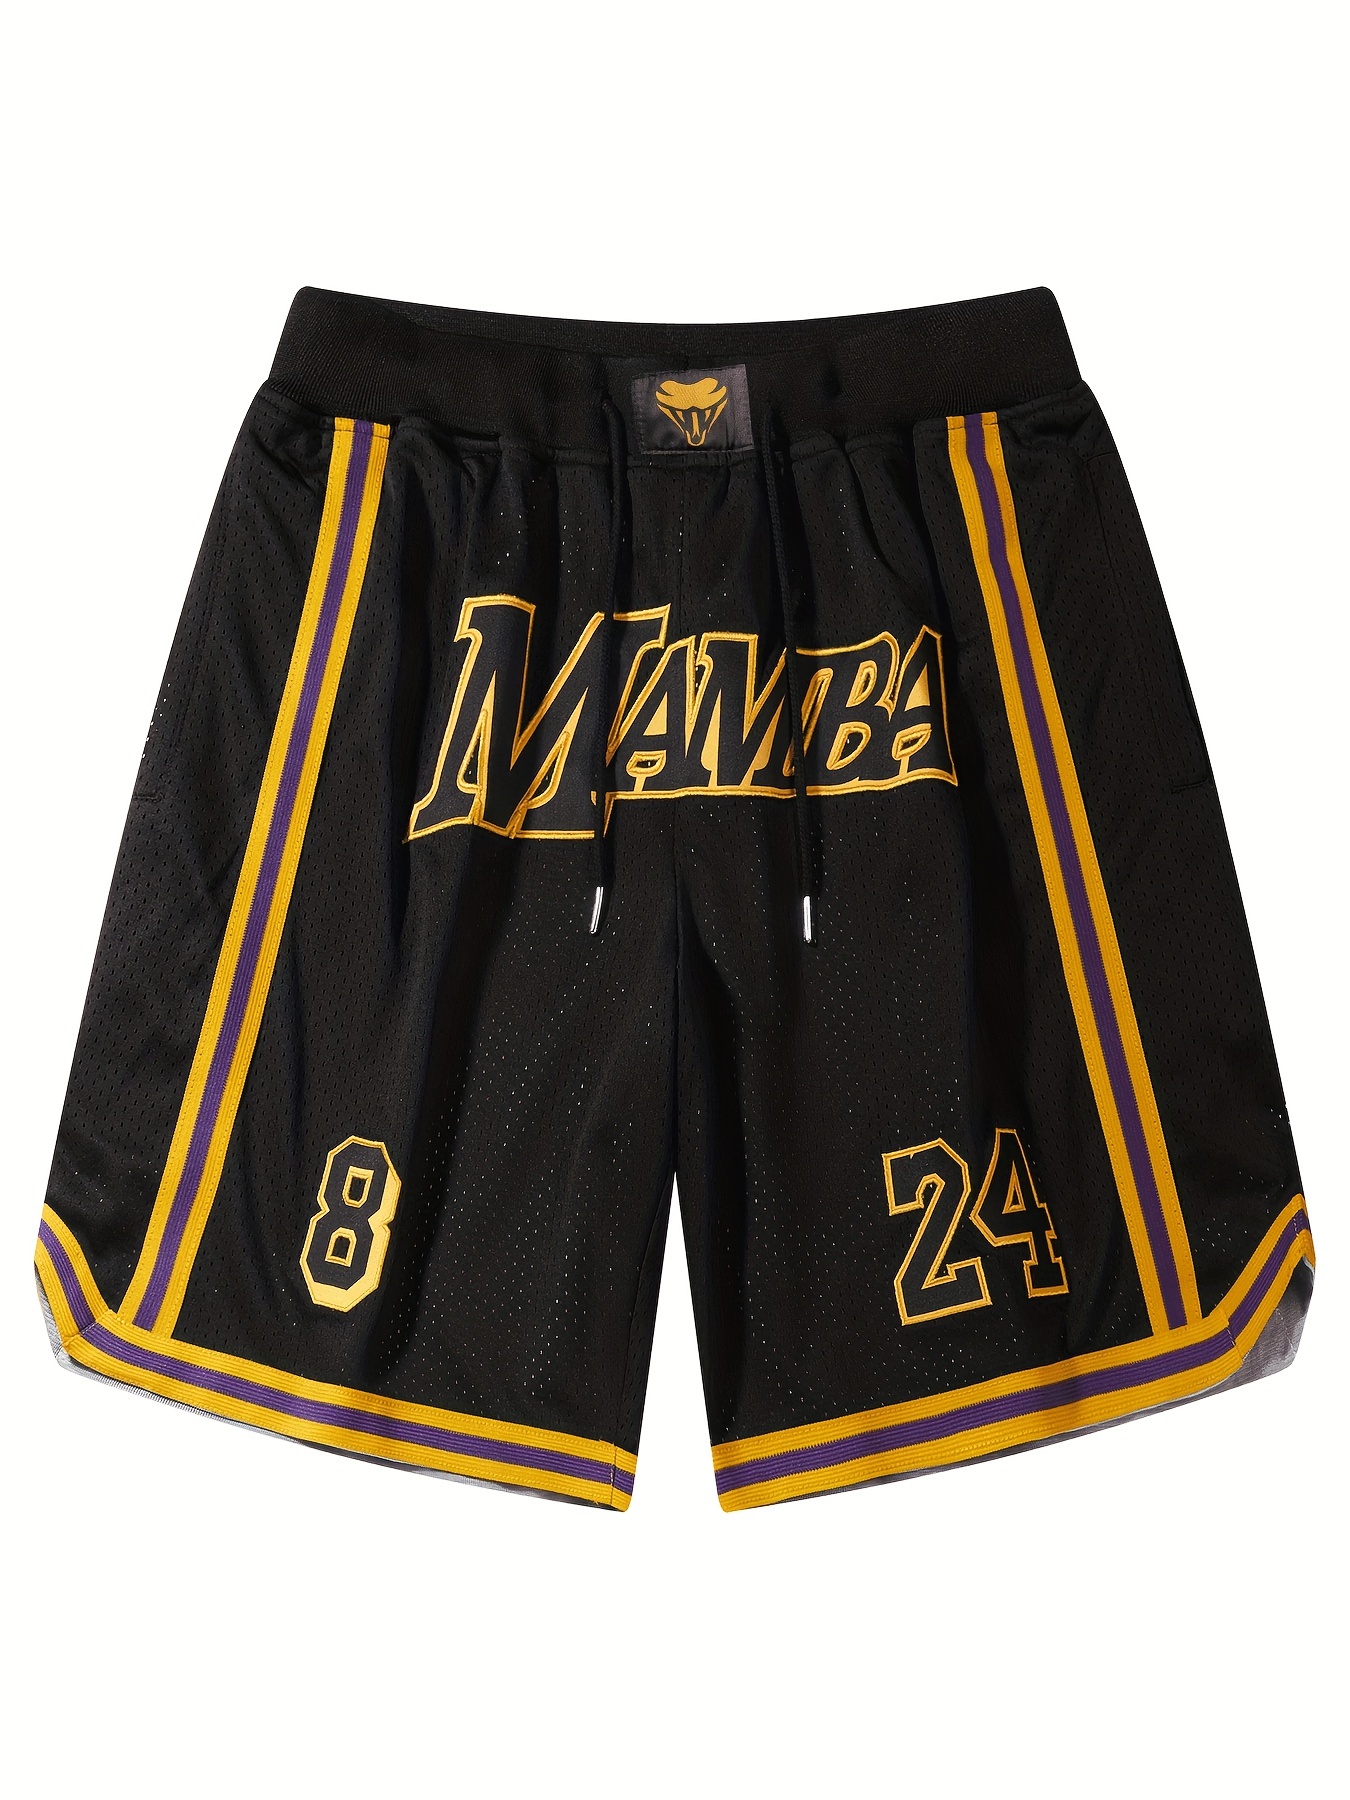  Sports Fan Shorts - Men / NBA / Sports Fan Shorts